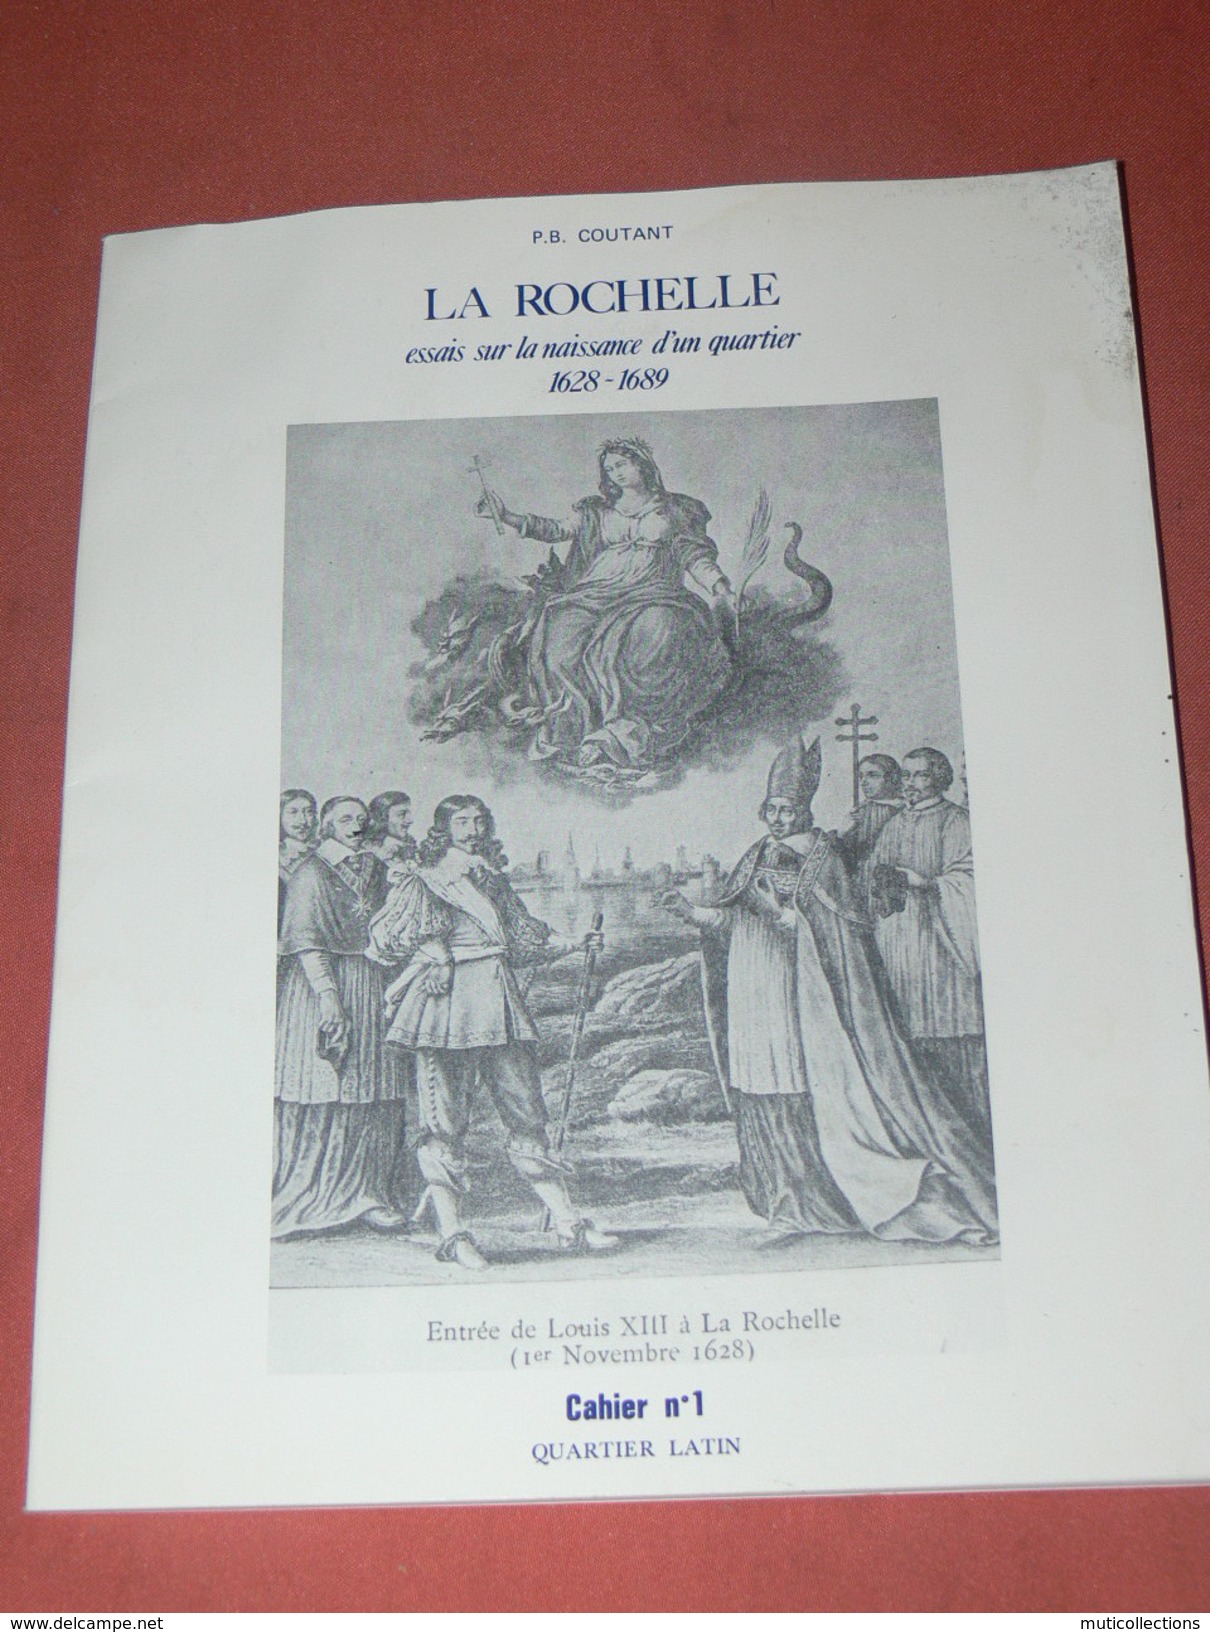 LA ROCHELLE / CAHIER N°1  /  QUARTIER LATIN  / NAISSANCE DUN QUARTIER / CHAUDRIER PAR PB COUTANT / ARCHEOLOGIE - Poitou-Charentes